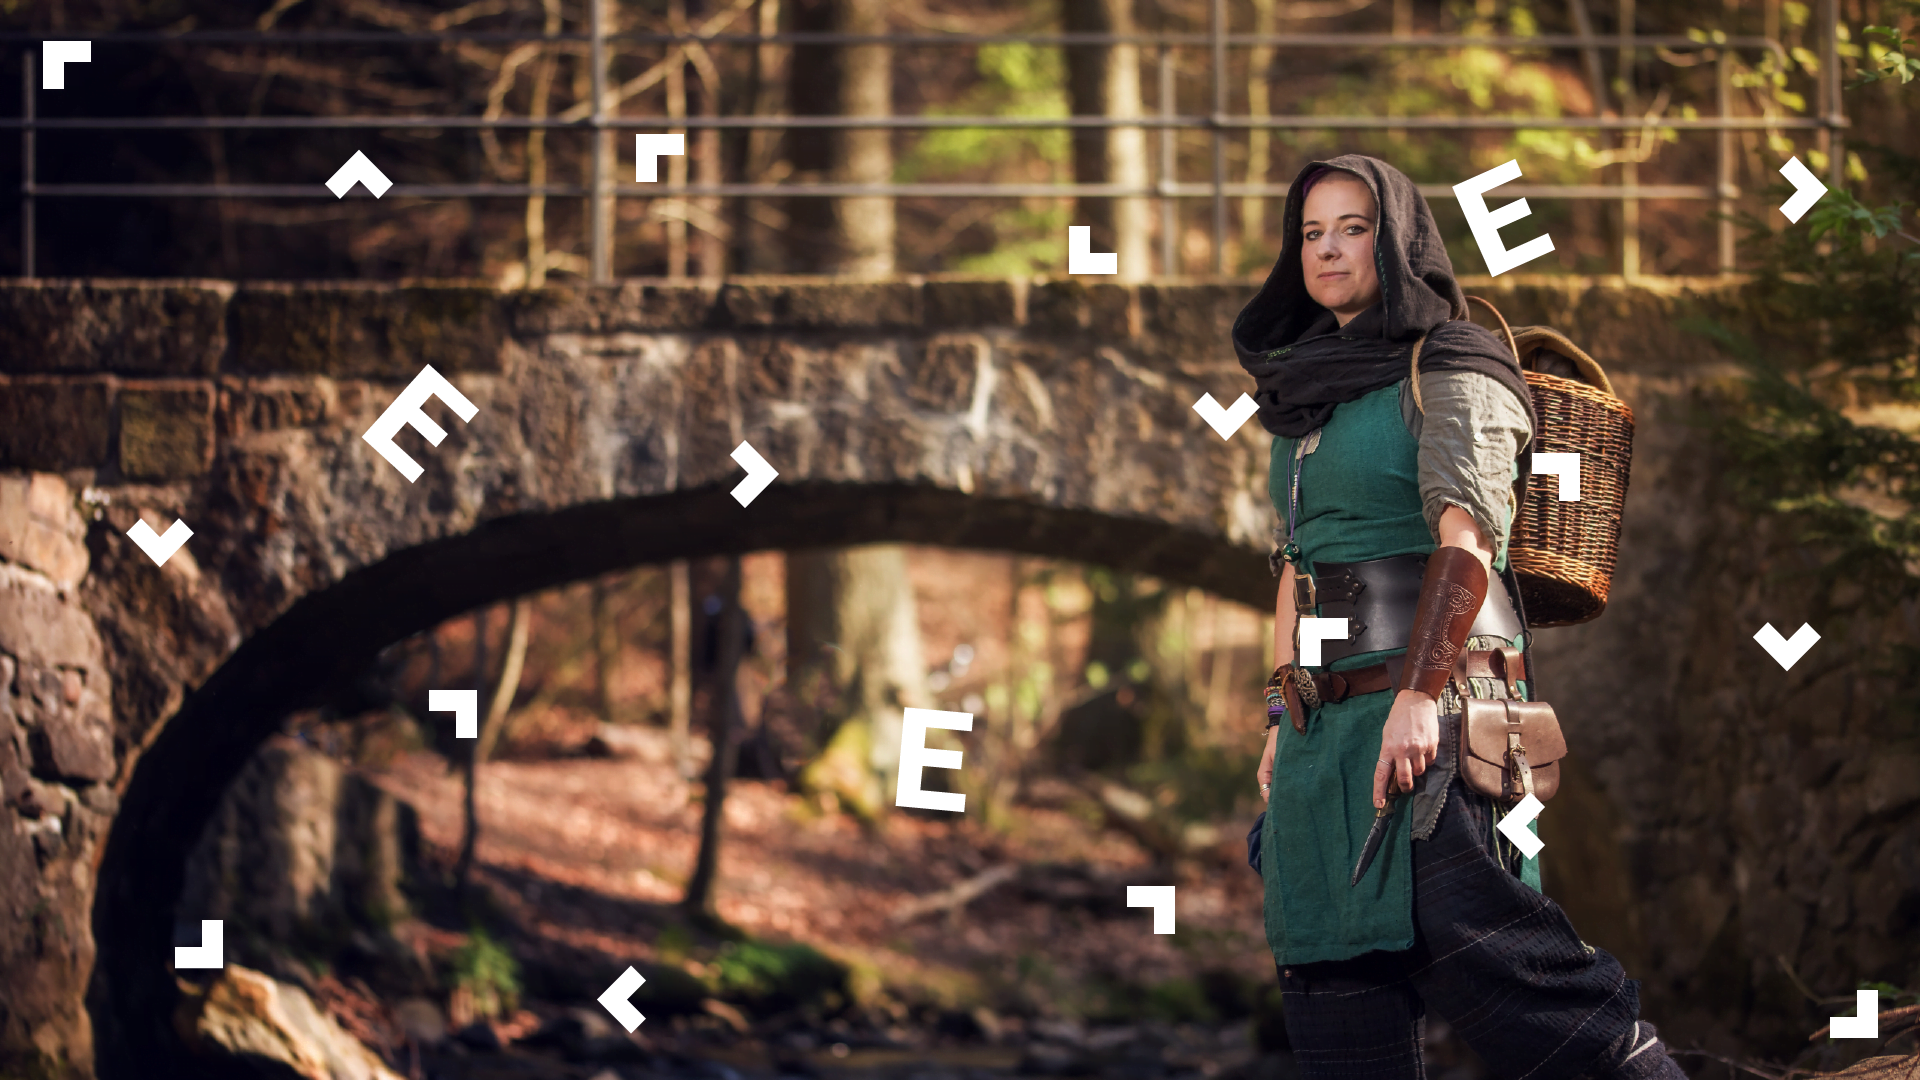 Kobieta przebrana w średniowieczny, zielony strój z kapturem stoi w lesie przy kamiennym moście.